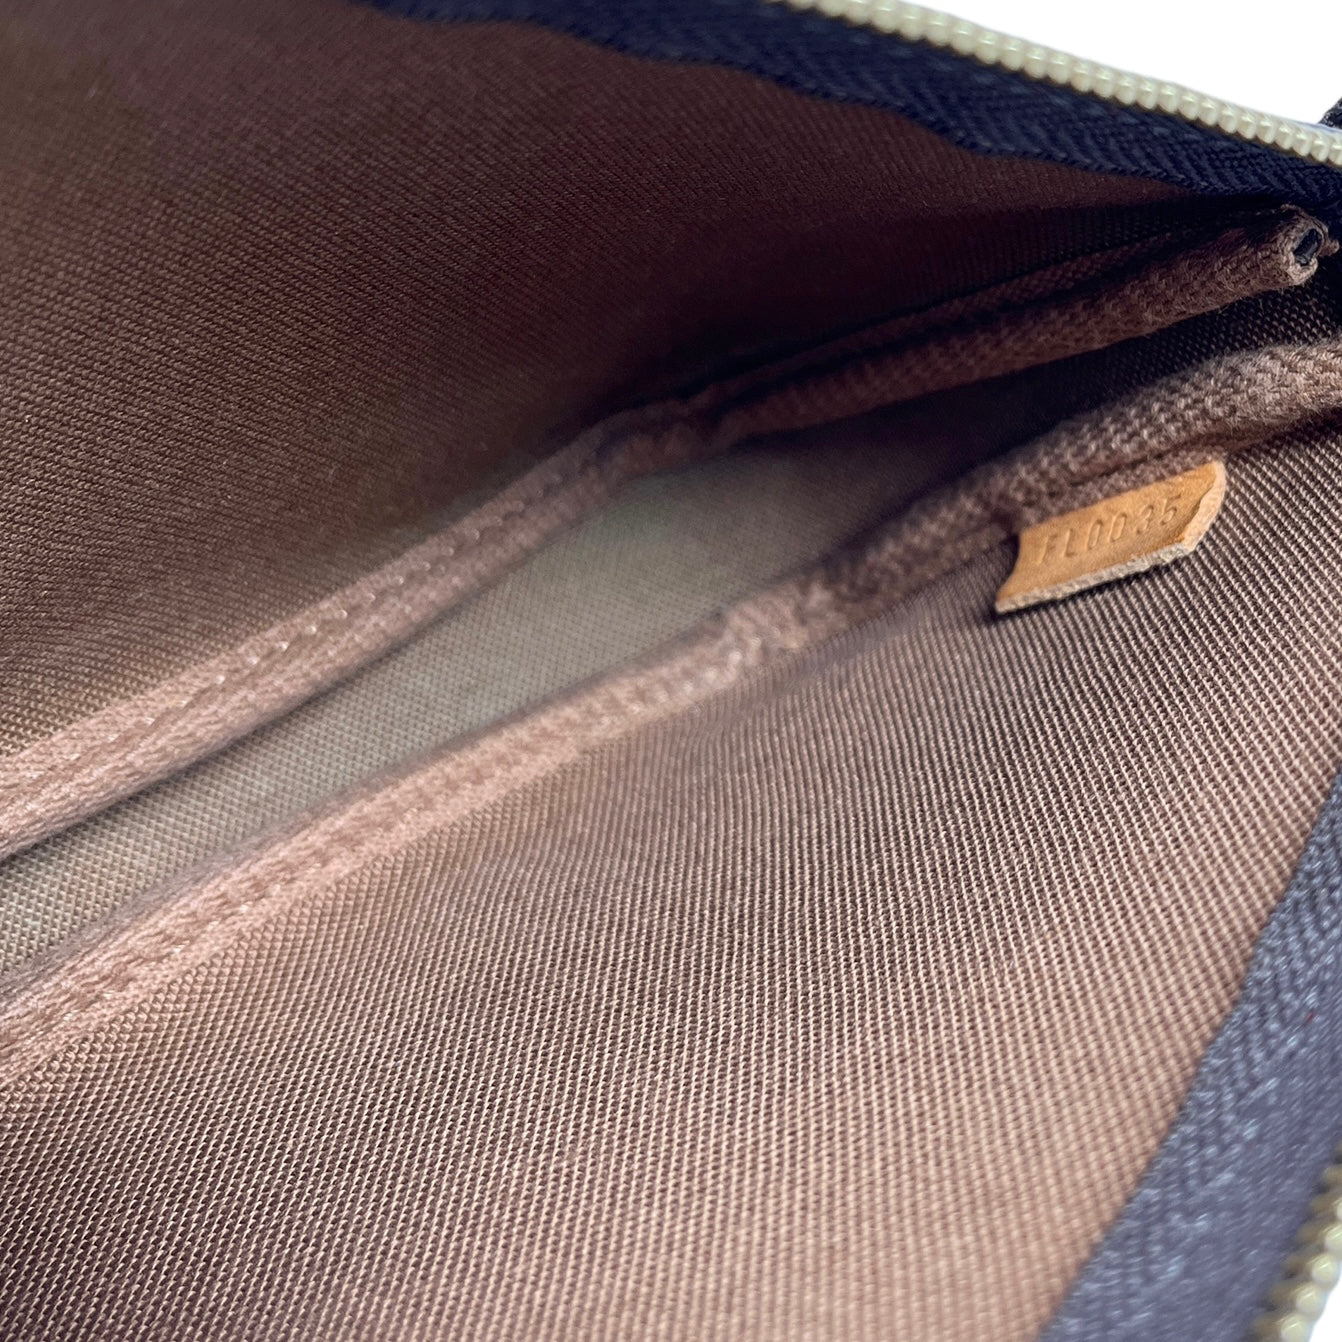 Louis Vuitton Monogram Cherry Mini Shoulder Bag